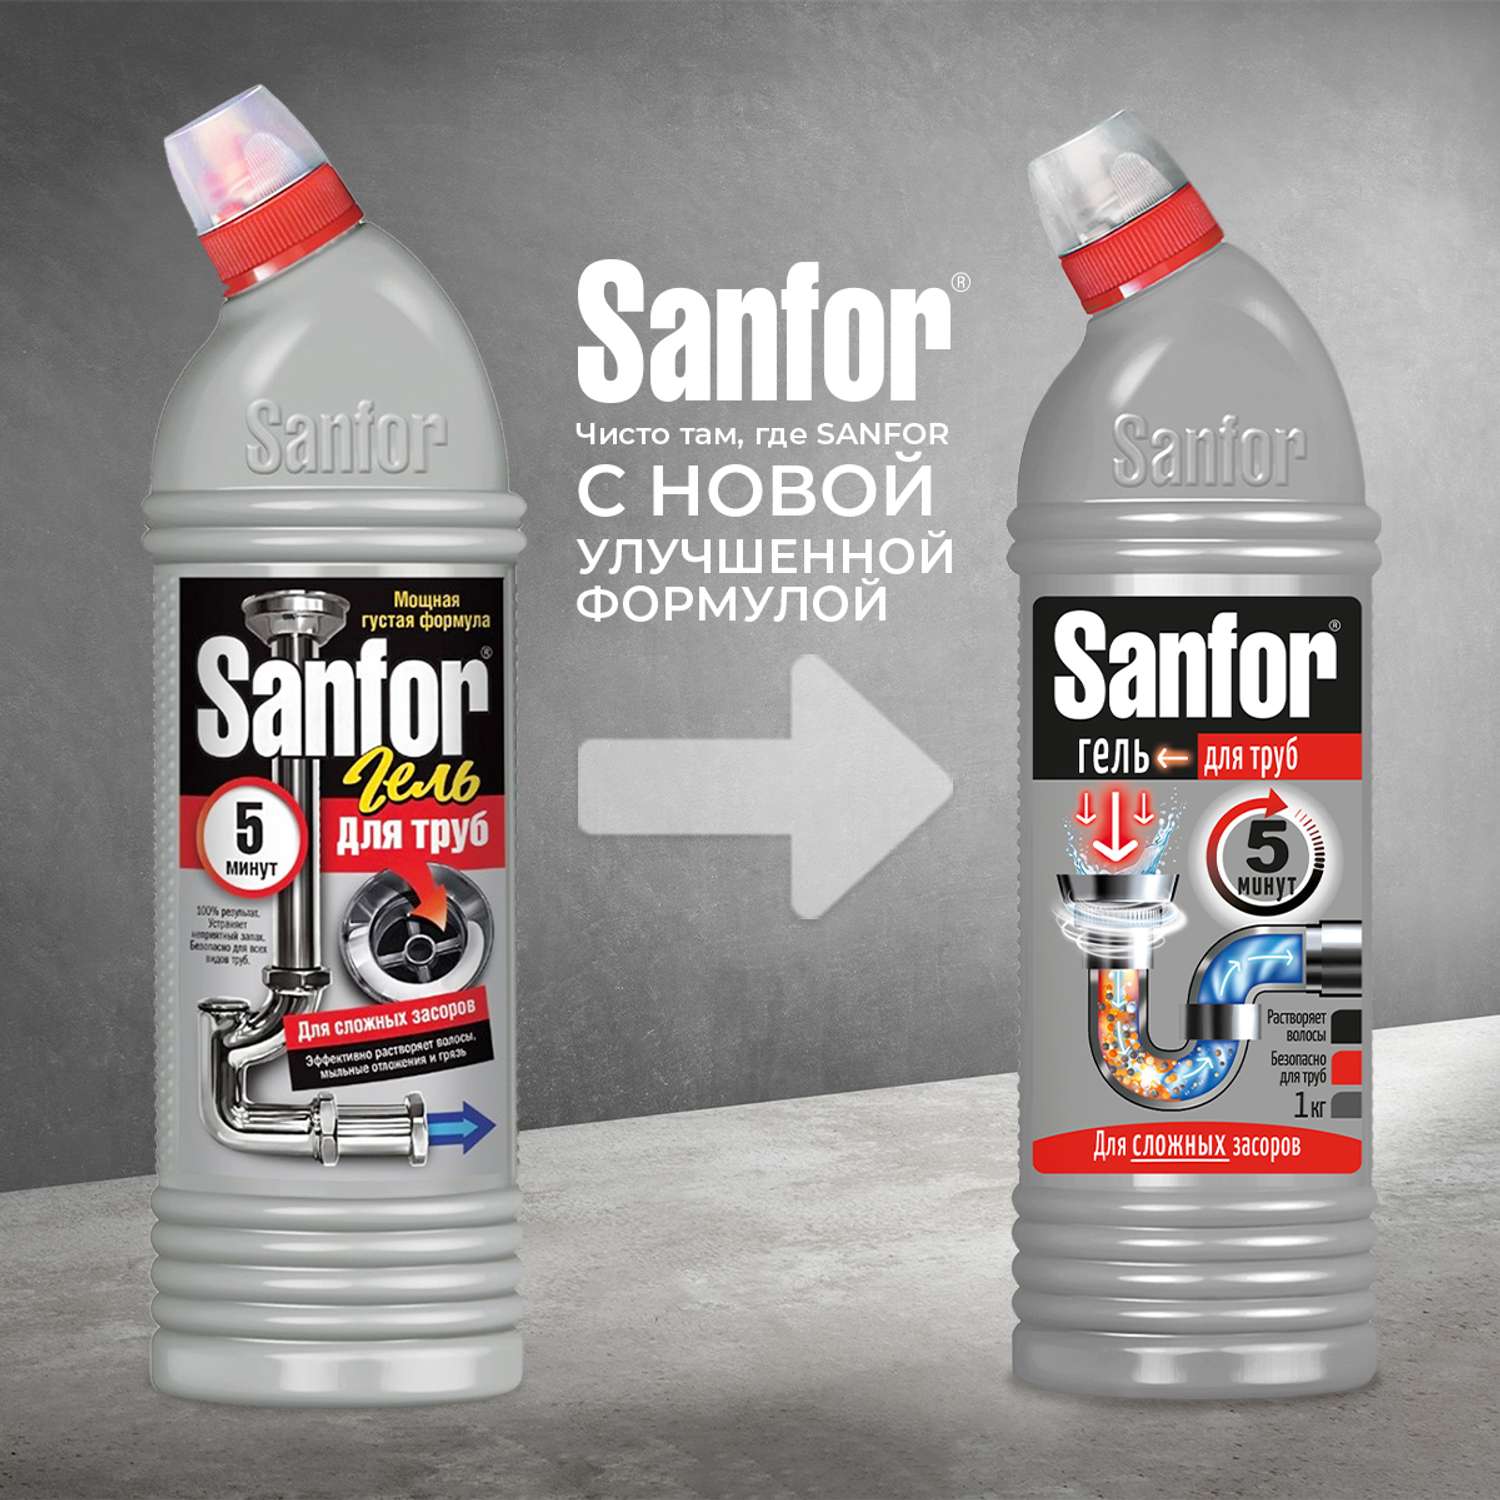 Средство против засоров Sanfor гель для труб против сложных засоров - 1000 г 2 шт. - фото 2